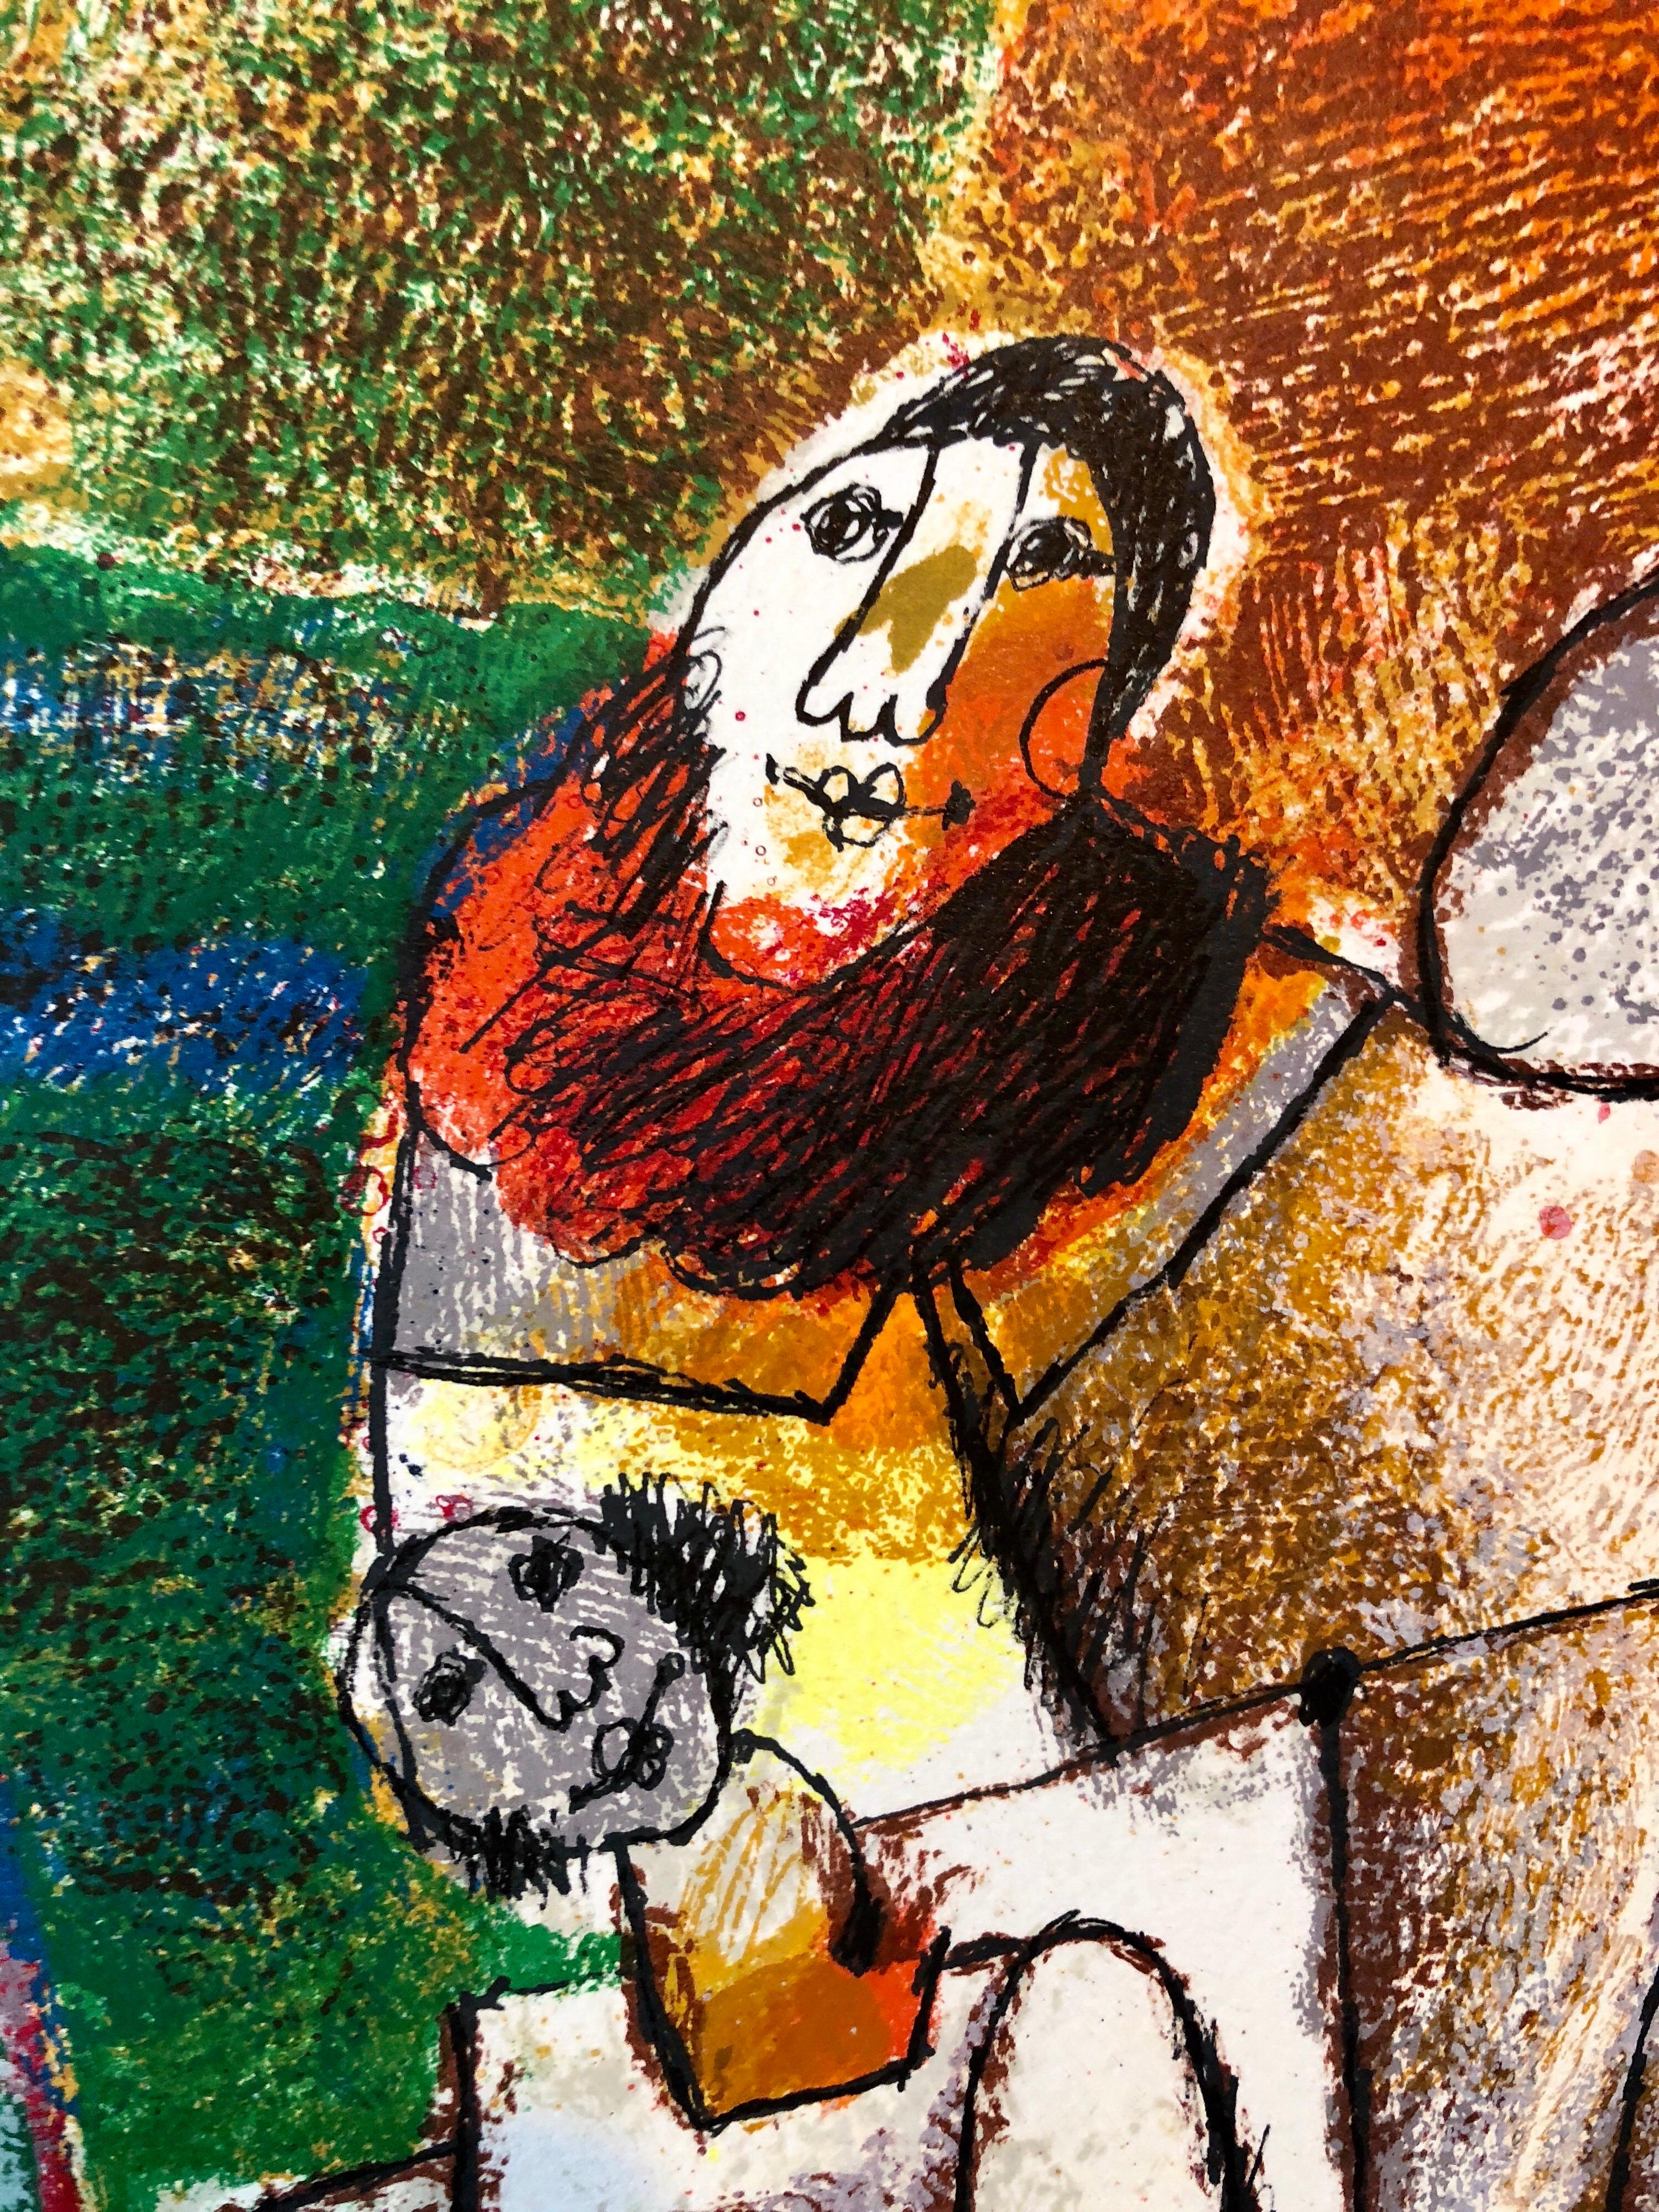 Theo Tobiasse 
Suite : Festival de Shavuot 
Année : 1984
Support : Gravure à l'eau-forte originale au carborundum, lithographie en couleurs sur papier Arches (papier à bords arrondis).
Signature : Signé à la main par l'artiste 
Éditeur Nahan